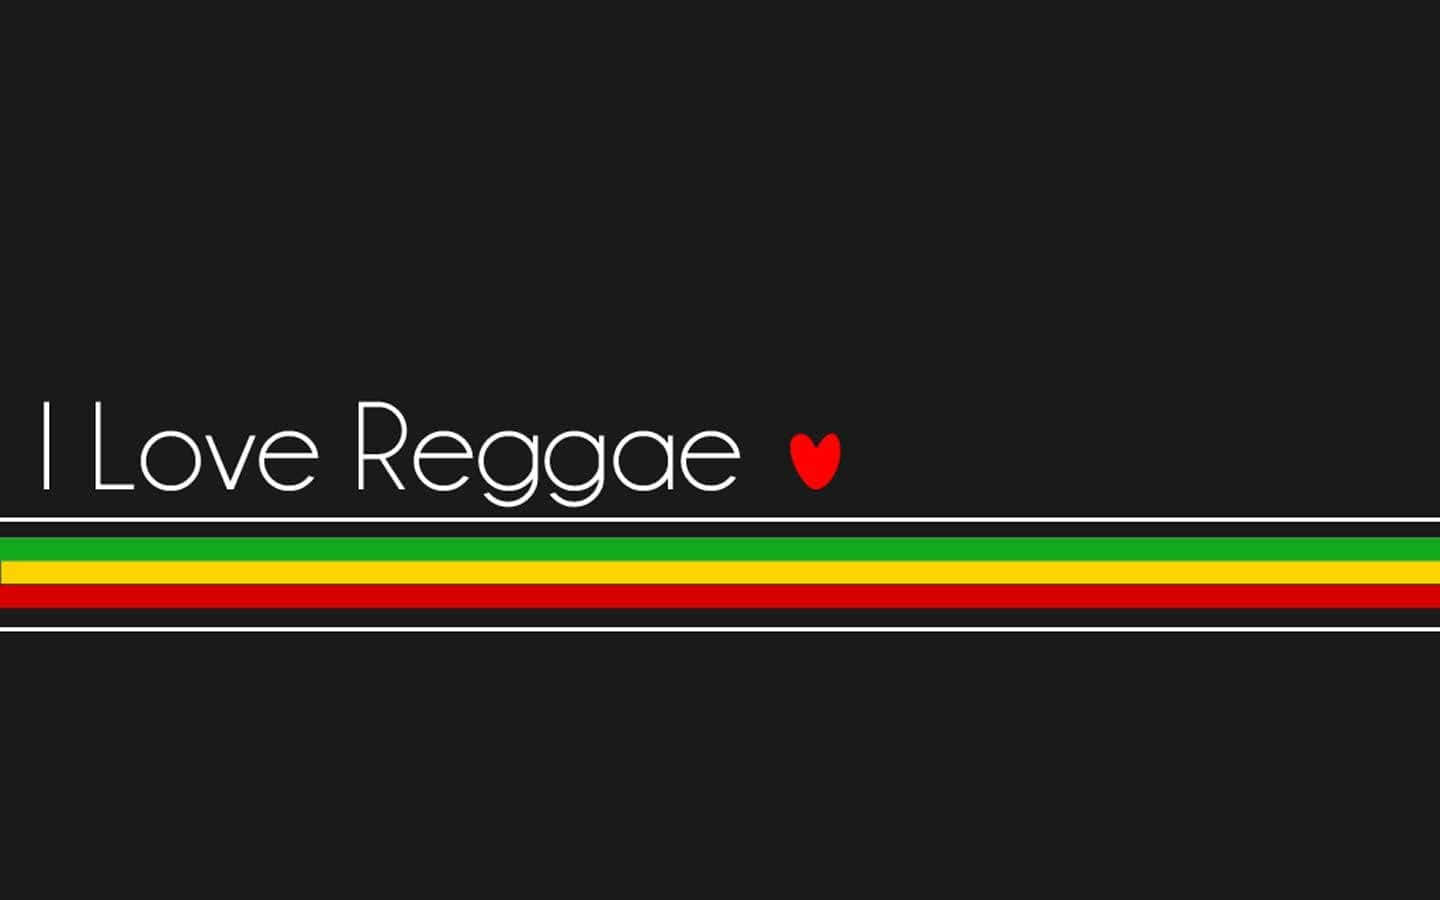 Kännden Uppiggande Energin Av Reggae-musiken.